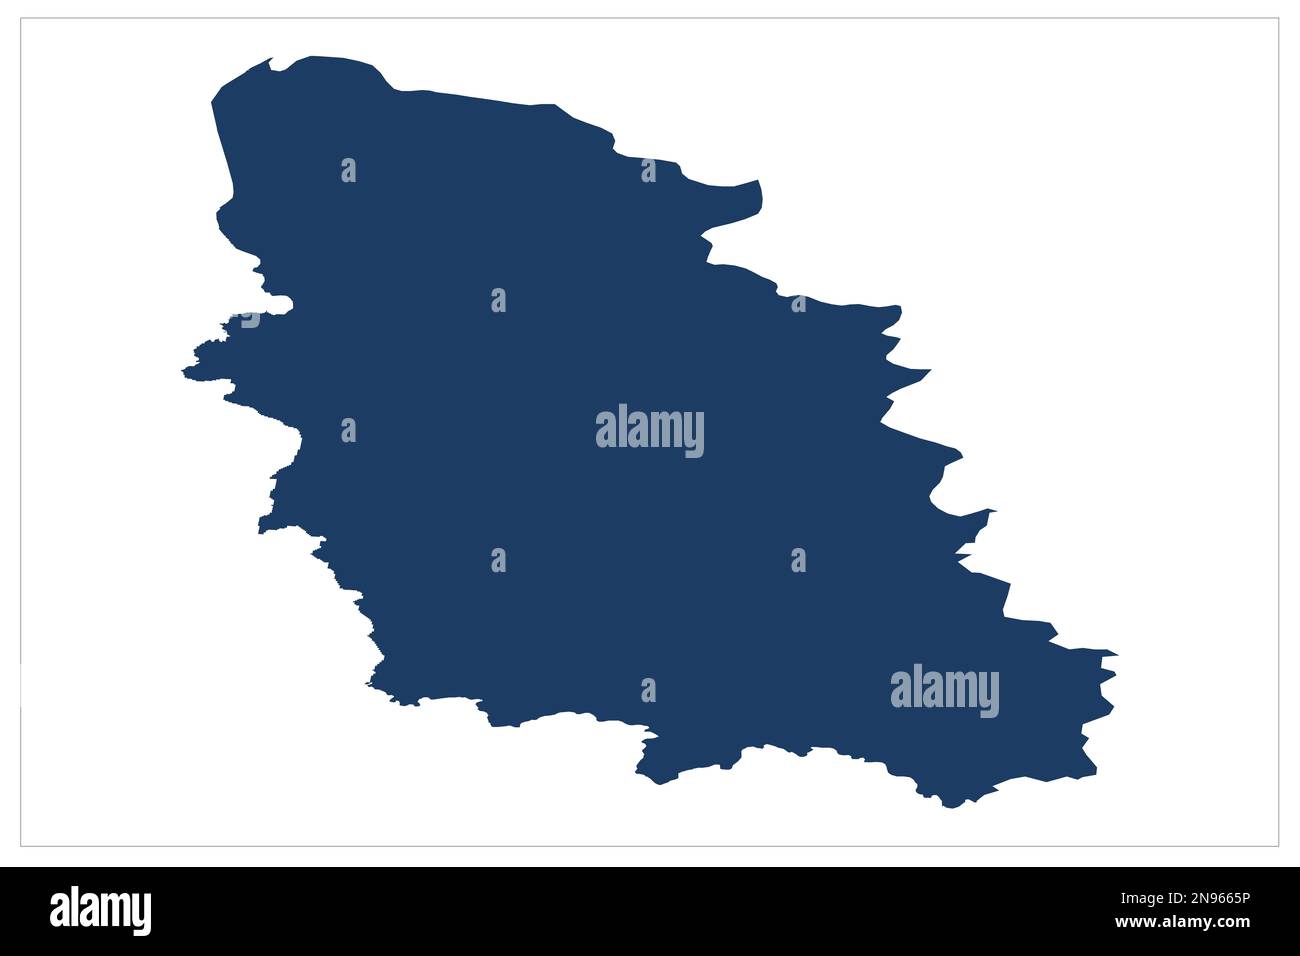 Provinz der Don-Kosaken, Oblast Rostowskaya, Oblast Pskowskaya , Pskav Russland Landkarte der Landesprovinz Abbildung auf weißem Hintergrund mit blauer Farbe Stockfoto